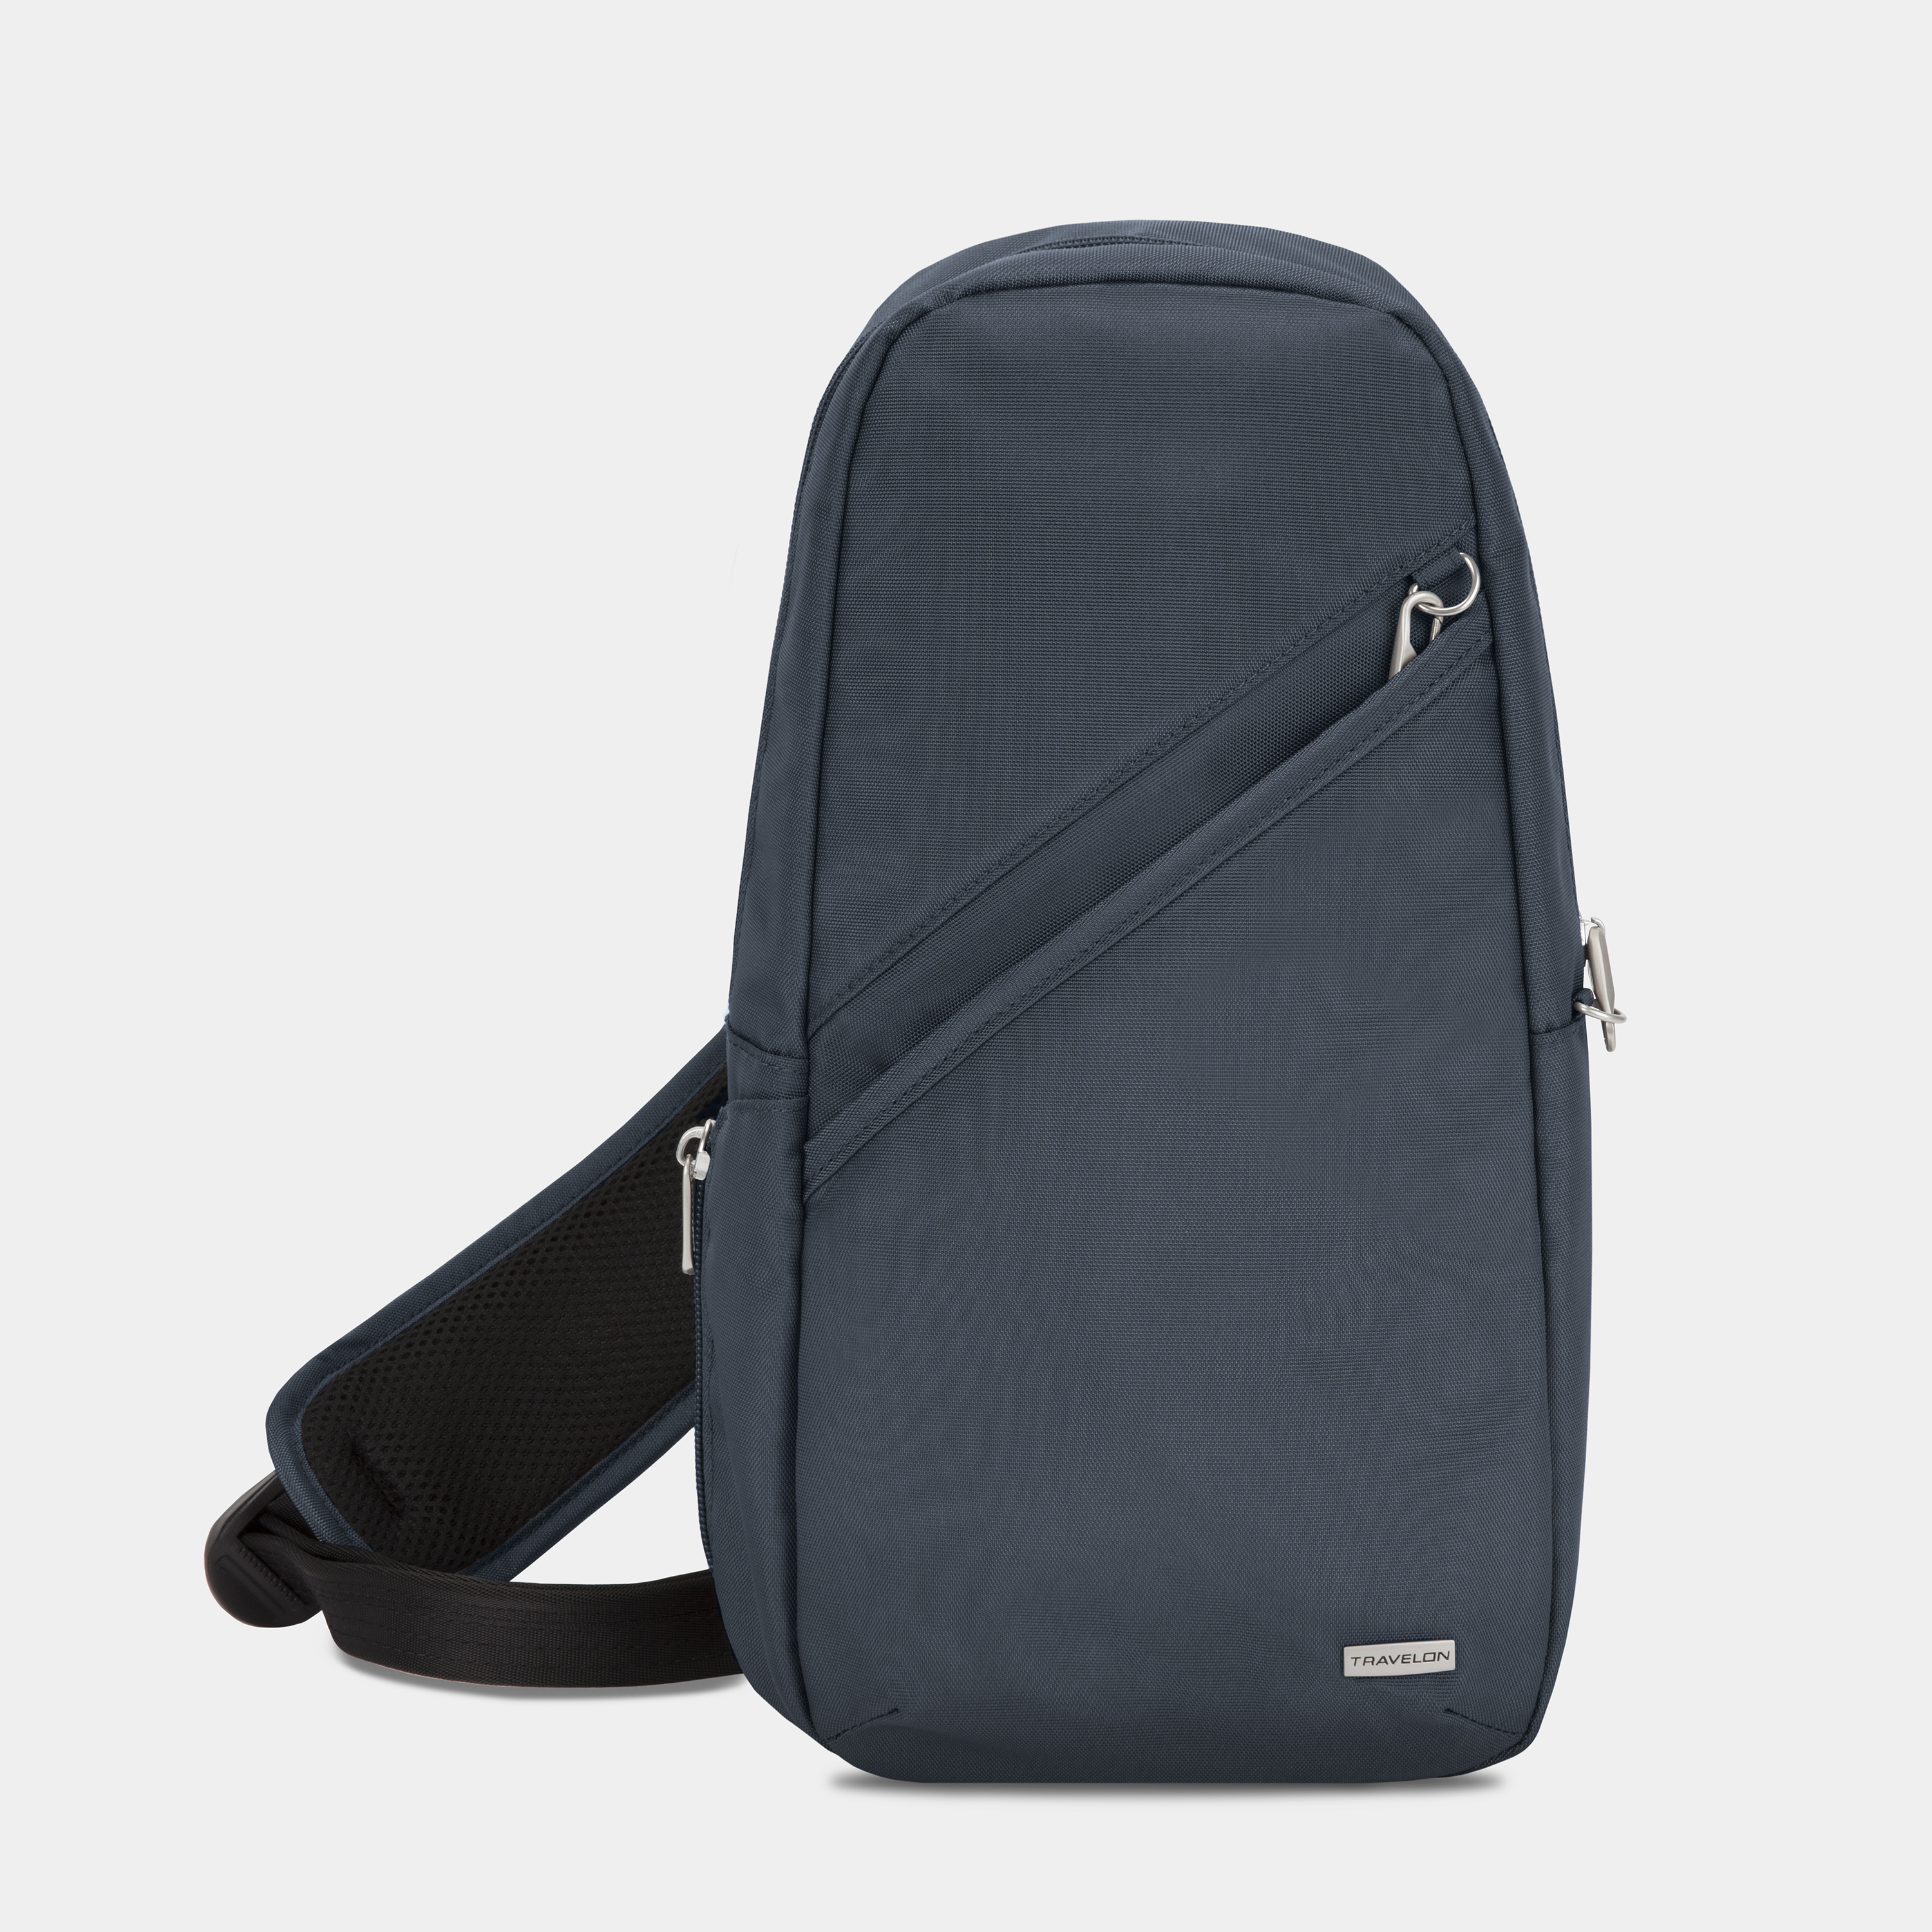 Unique Eco Friendly Cork Sling Messenger Bag | Corporate bag